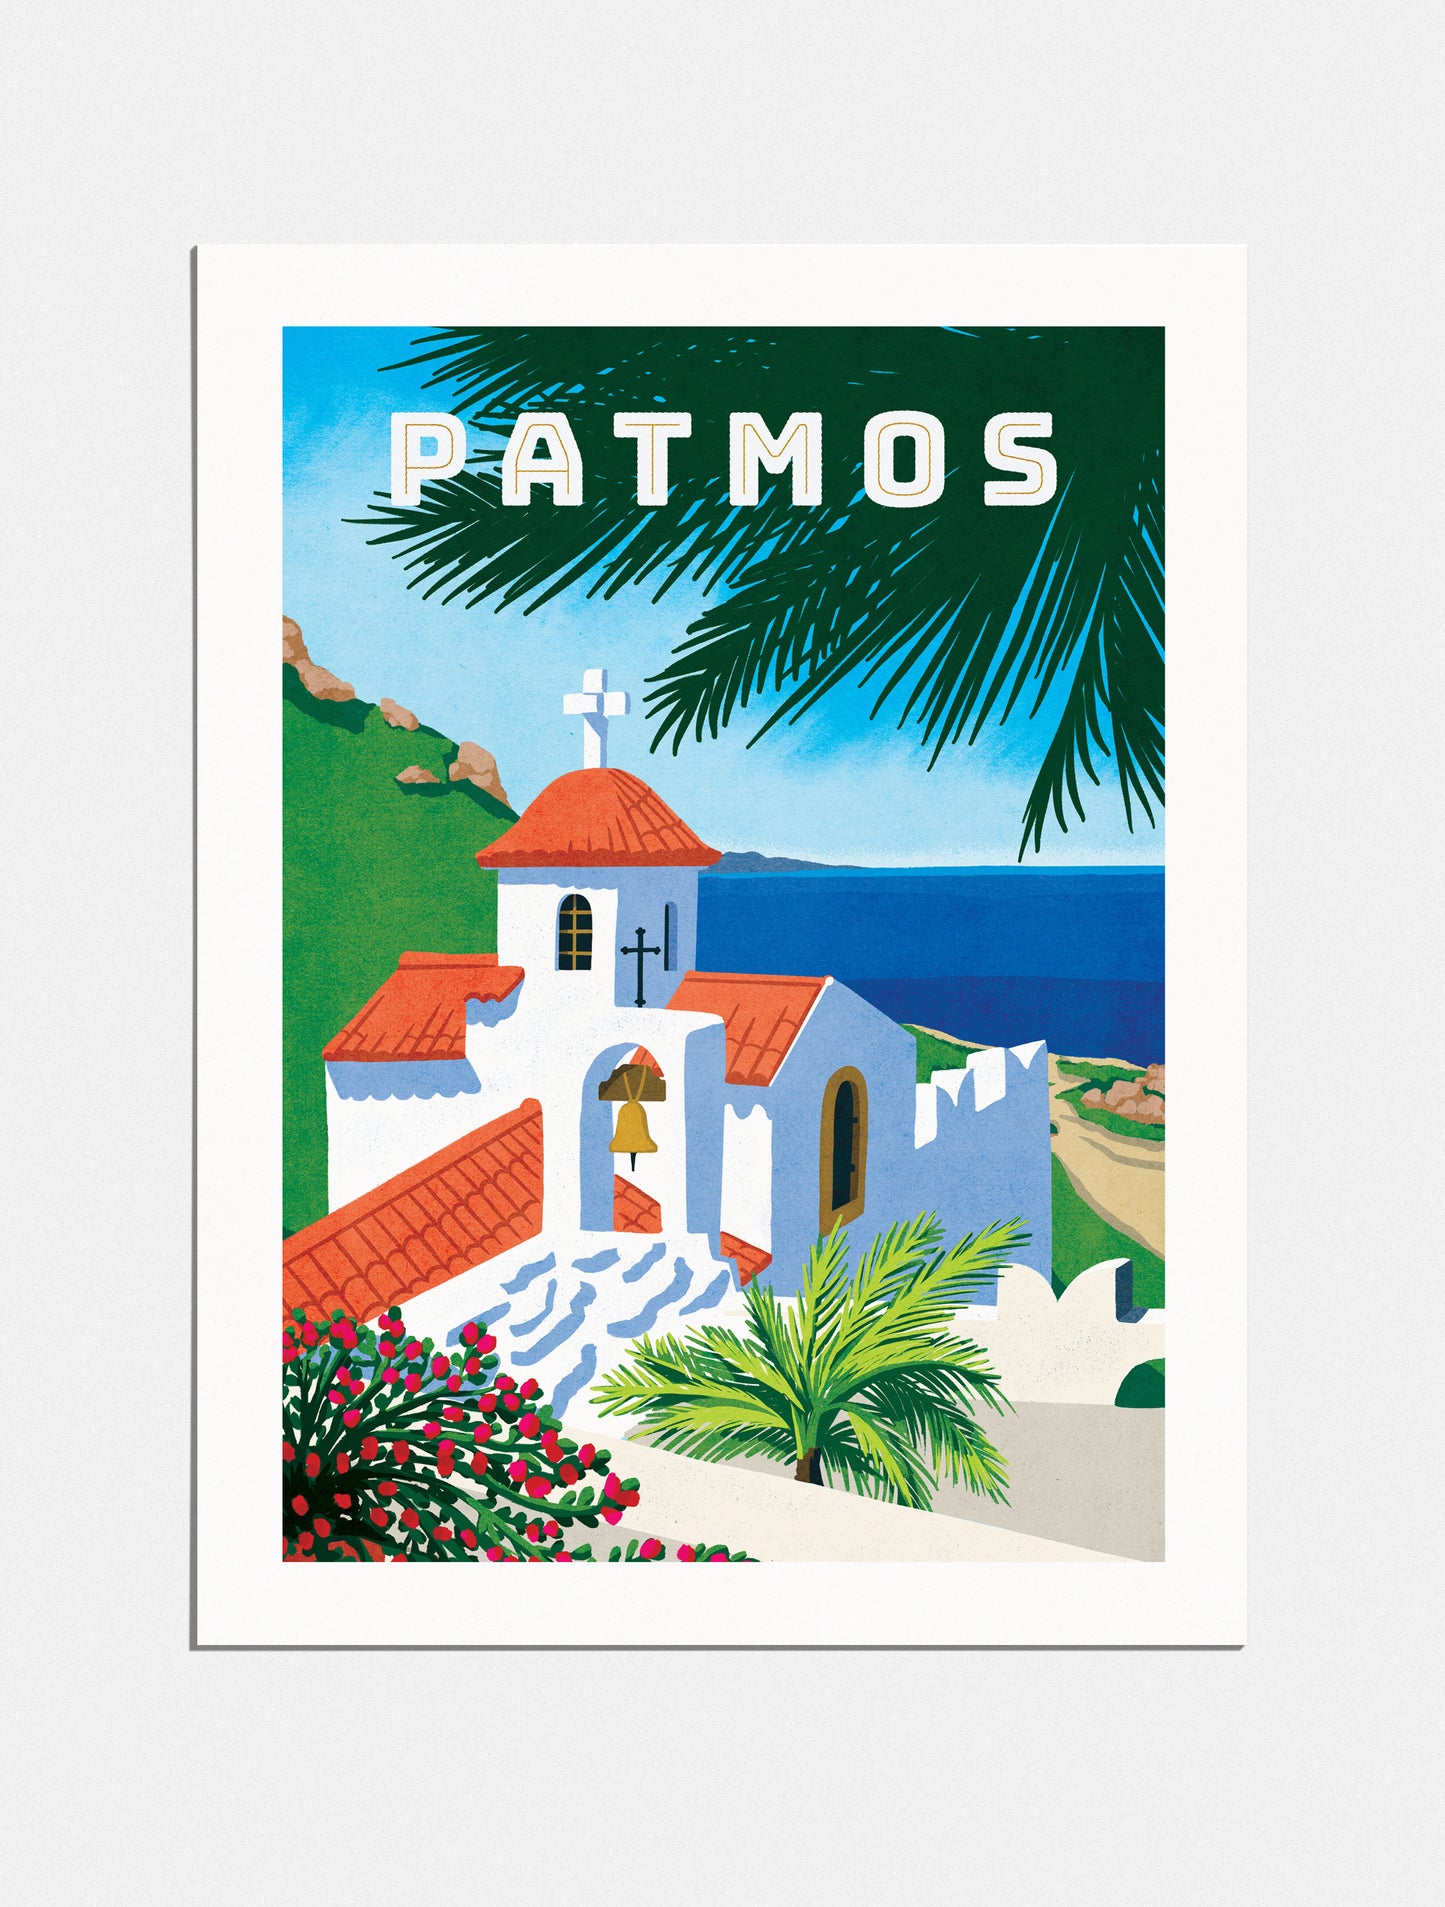 Print: Pilgrimage to Patmos